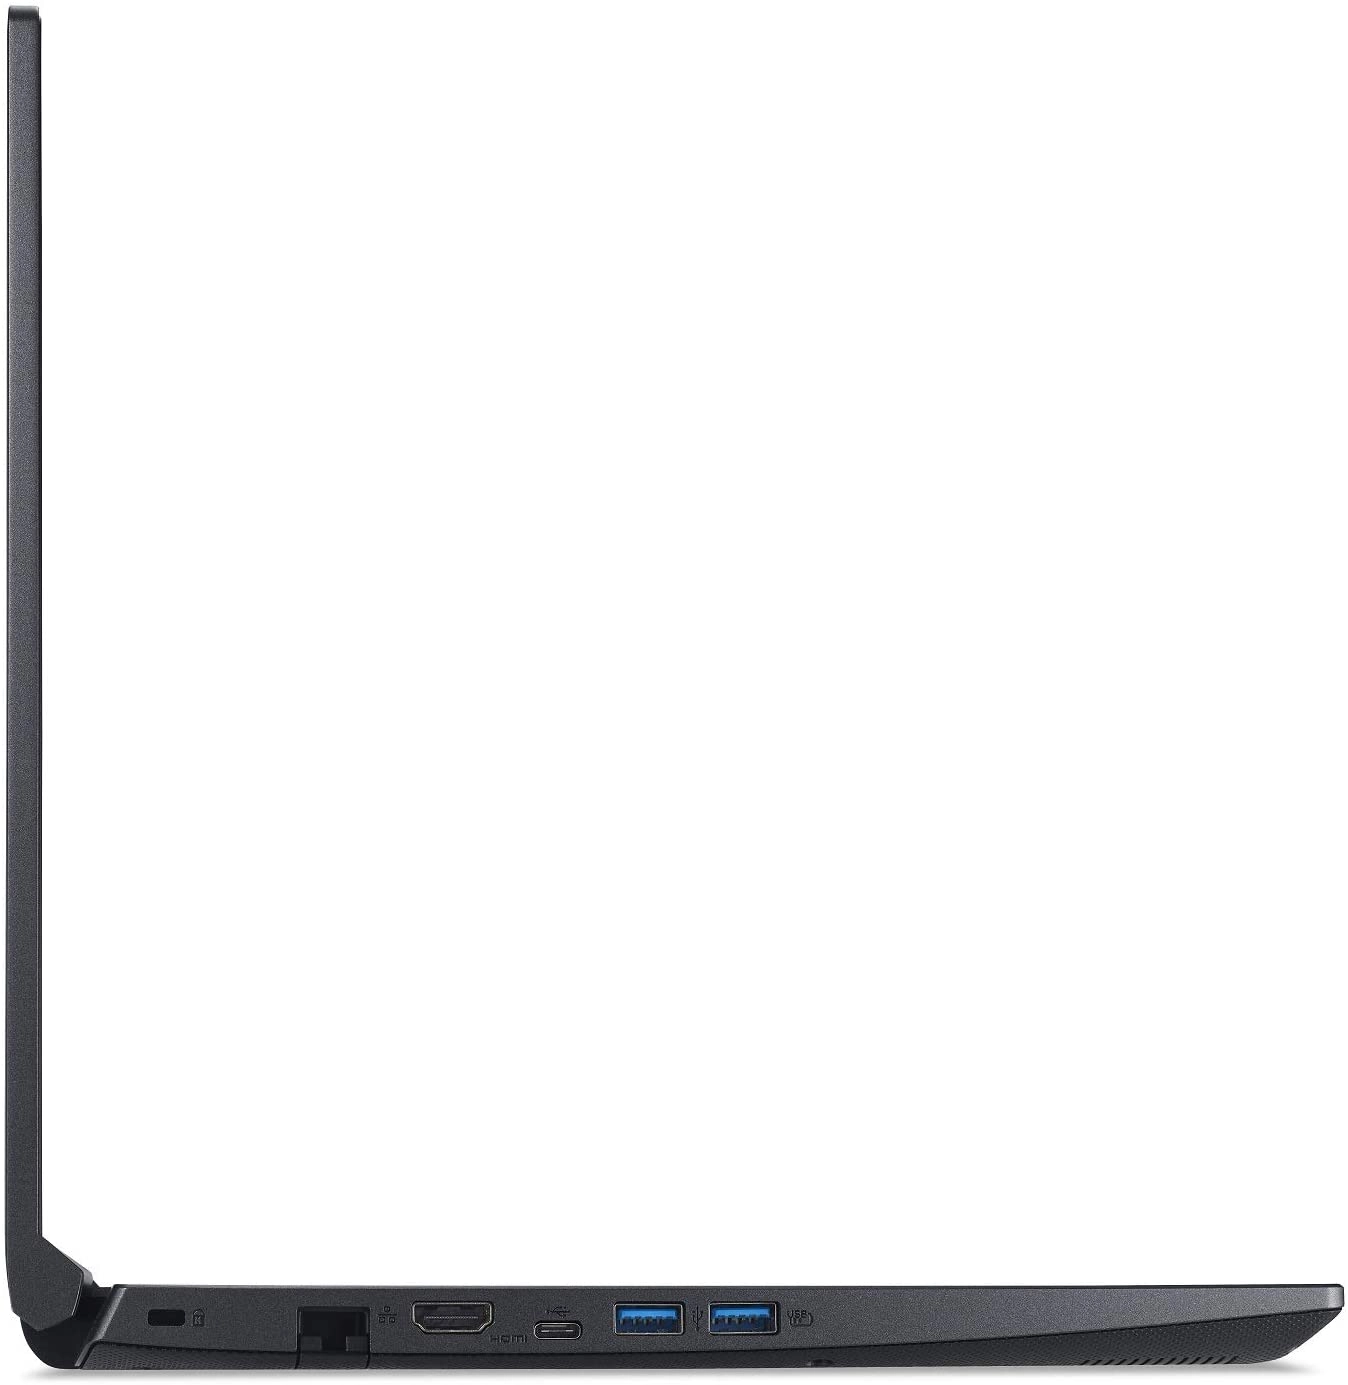 Acer A715-41G-R7X4 laptop image